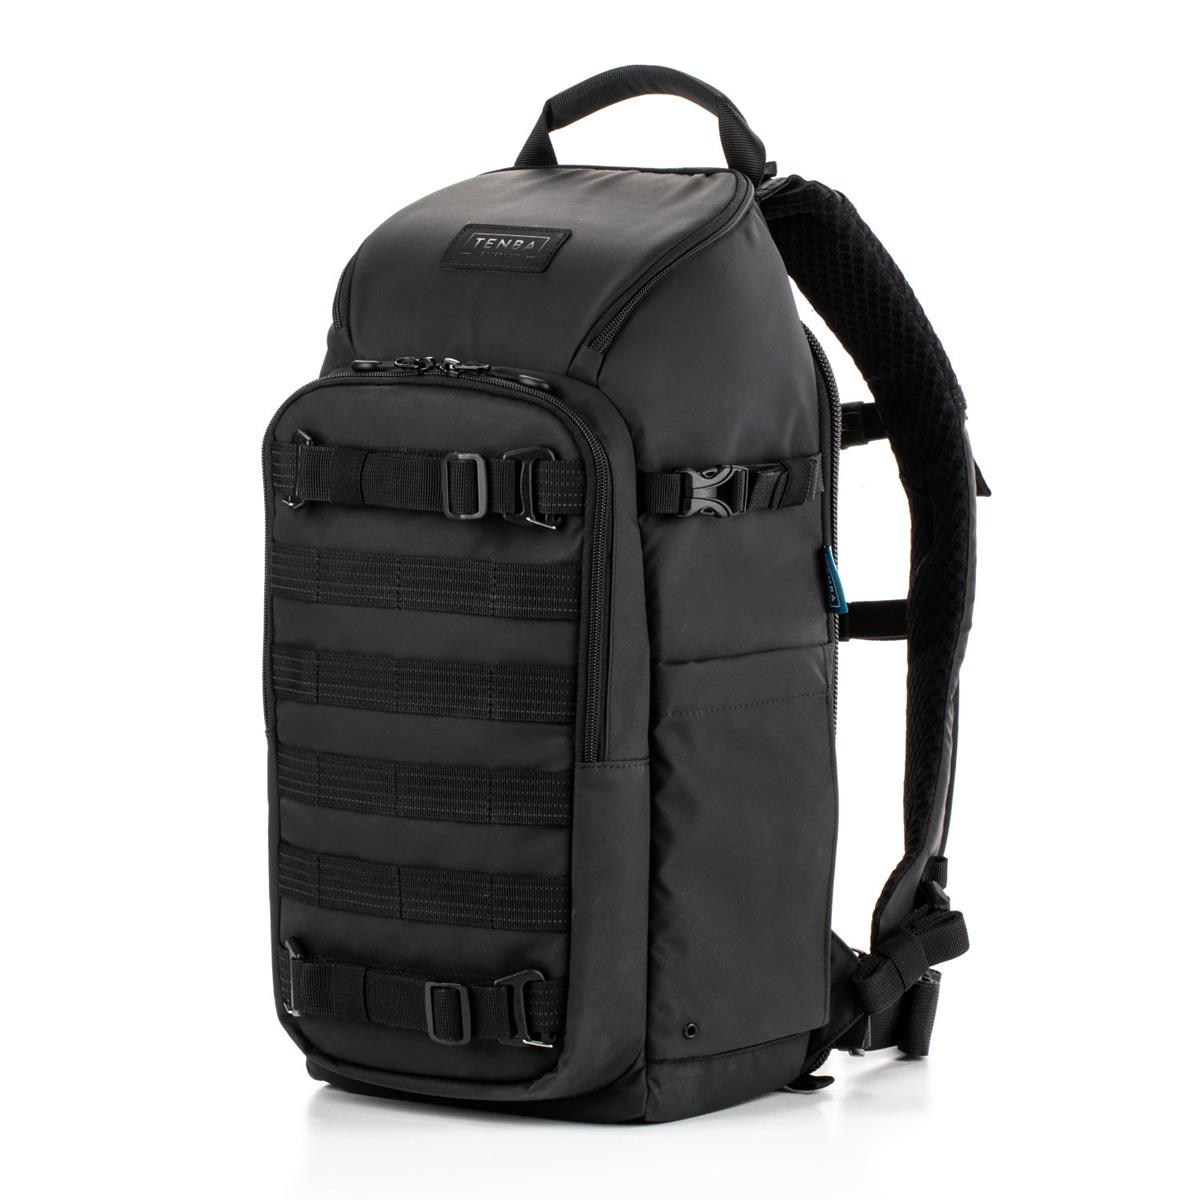 Рюкзак для камеры Tenba Axis V2 16 л, черный #637-752